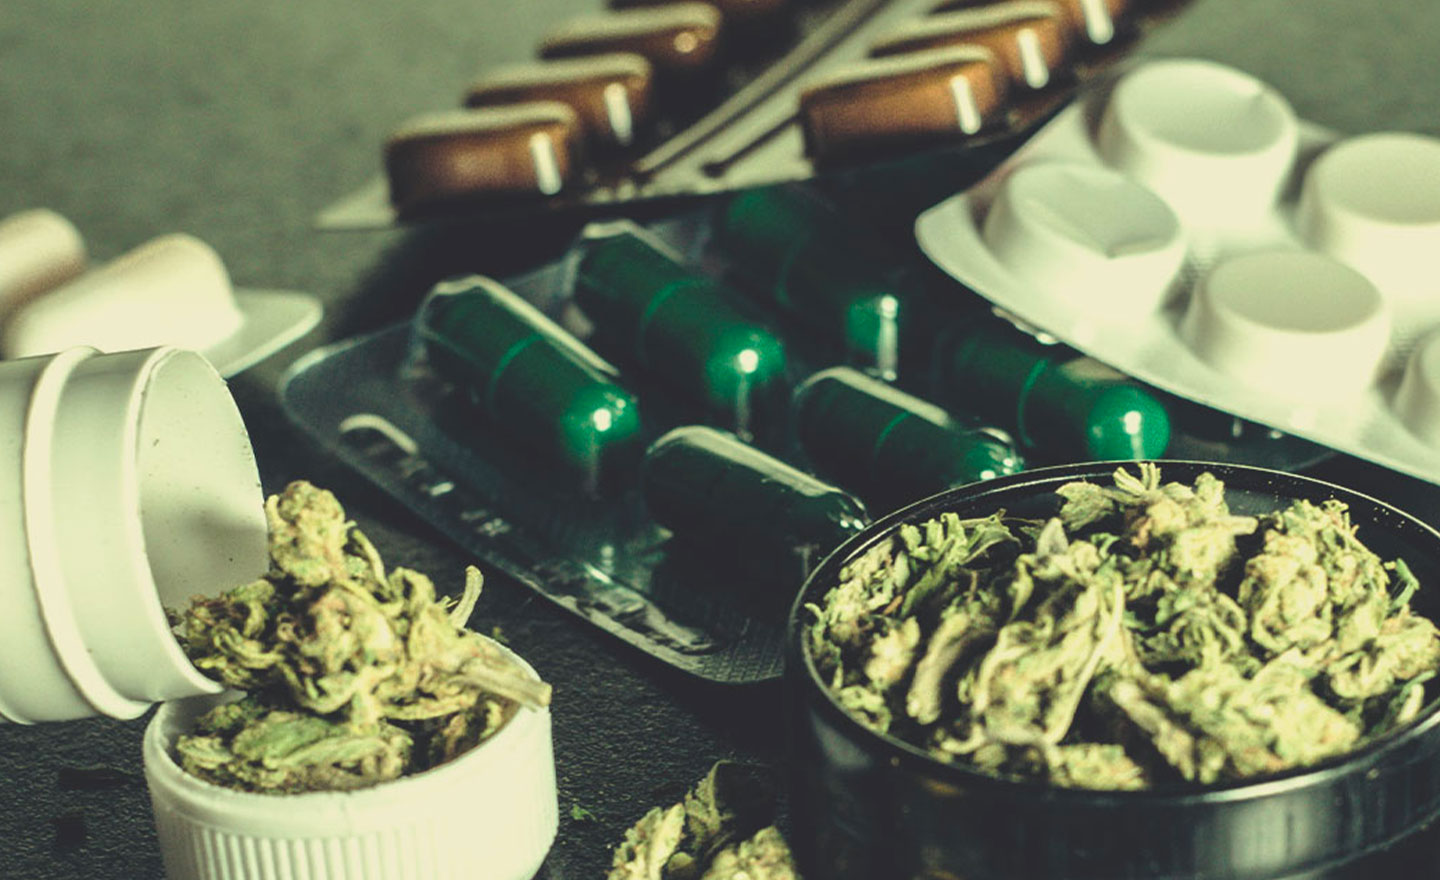 Perché chi consuma droga sceglie la cannabis come sostituto?